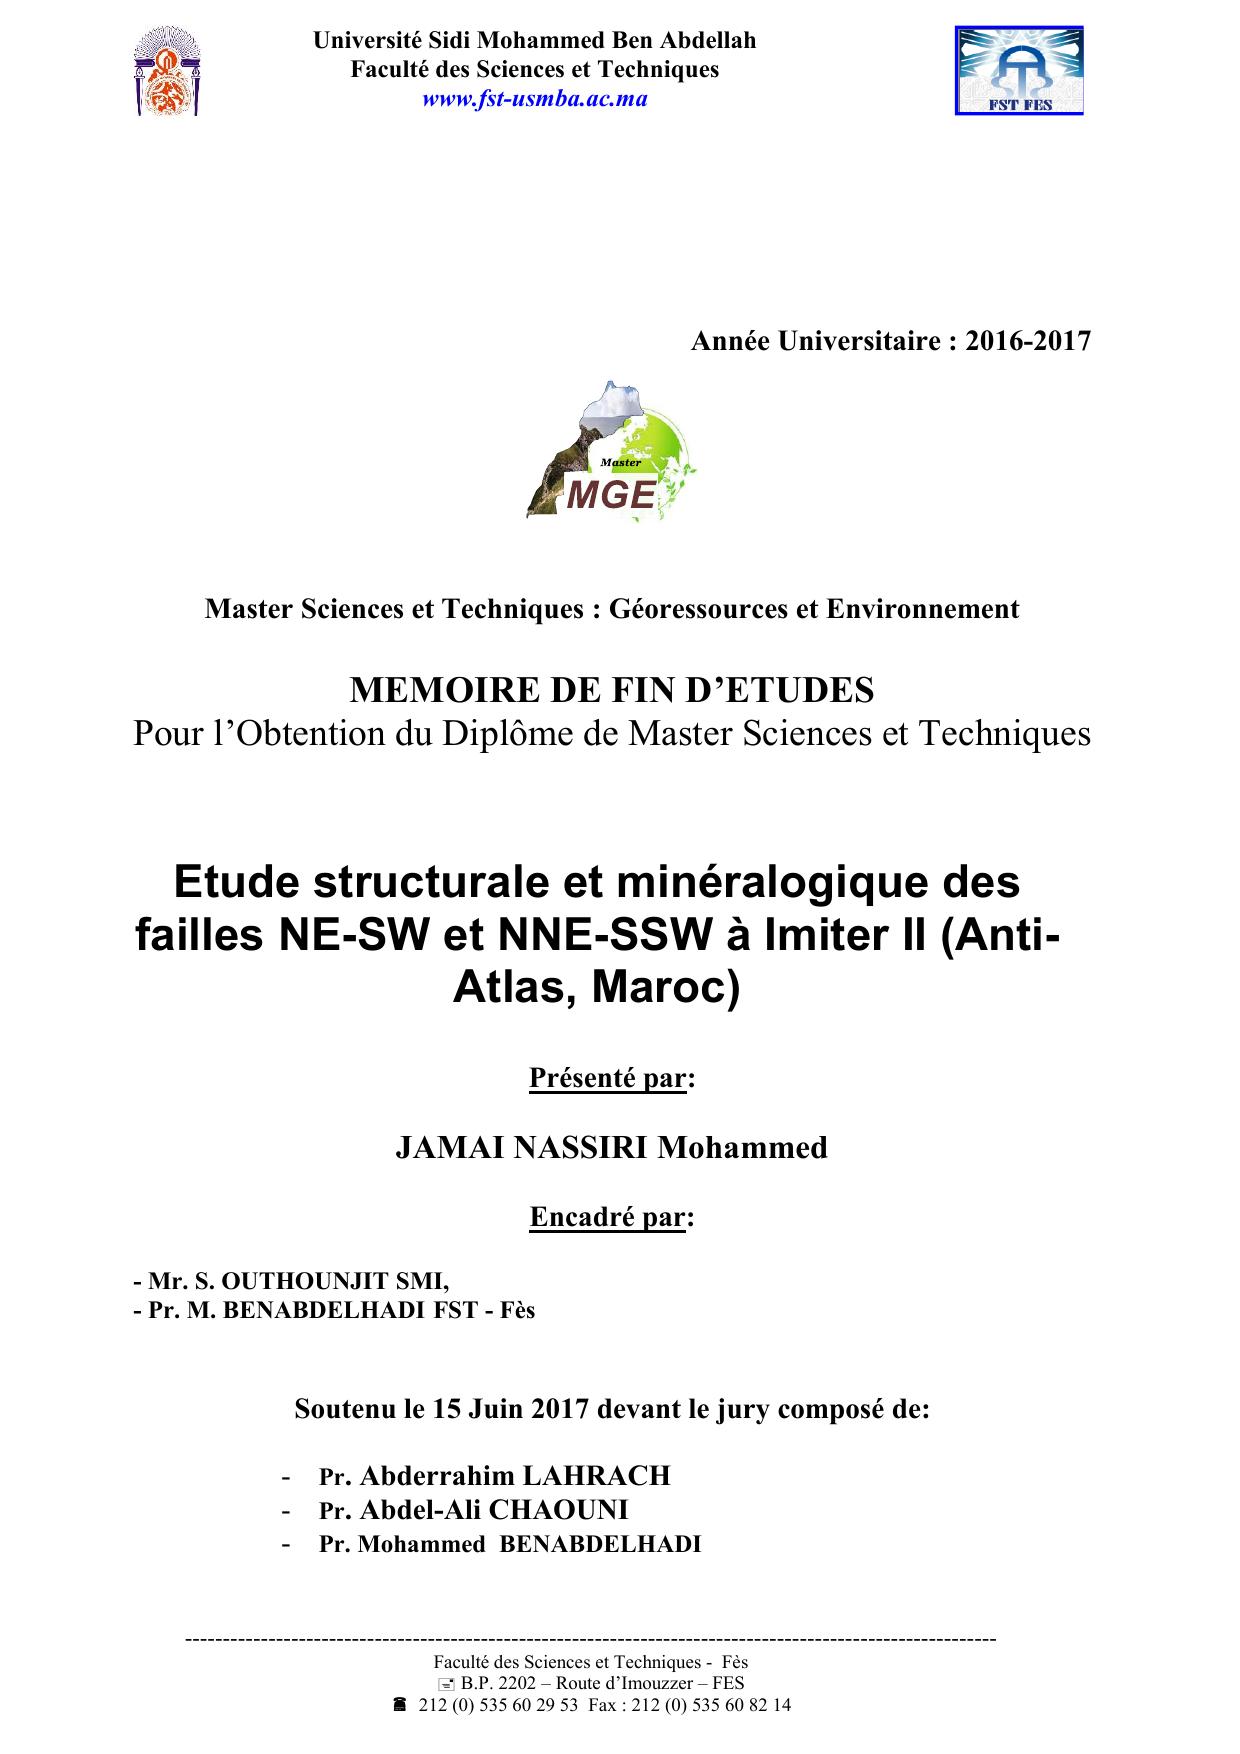 Etude structurale et minéralogique des failles NE-SW et NNE-SSW à Imiter II (Anti- Atlas, Maroc)